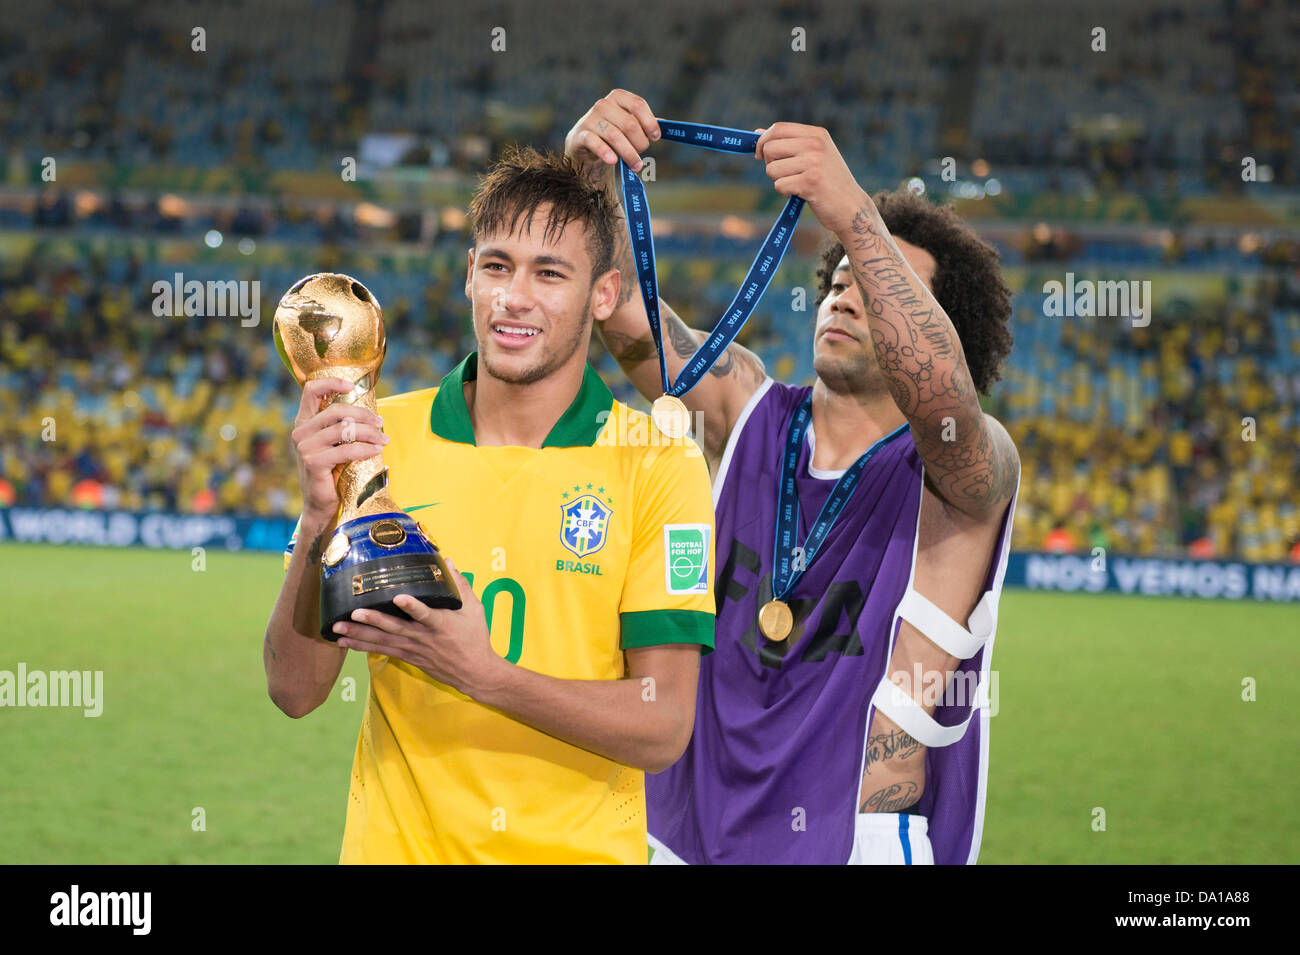 Rio De Janeiro, Brasilien. 30. Juni 2013. (L-R) Neymar, Marcelo (BRA), 30.  Juni 2013 - Fußball / Fußball: Neymar von Brasilien feiert mit der Trophäe  nach dem Gewinn der FIFA Confederations Cup